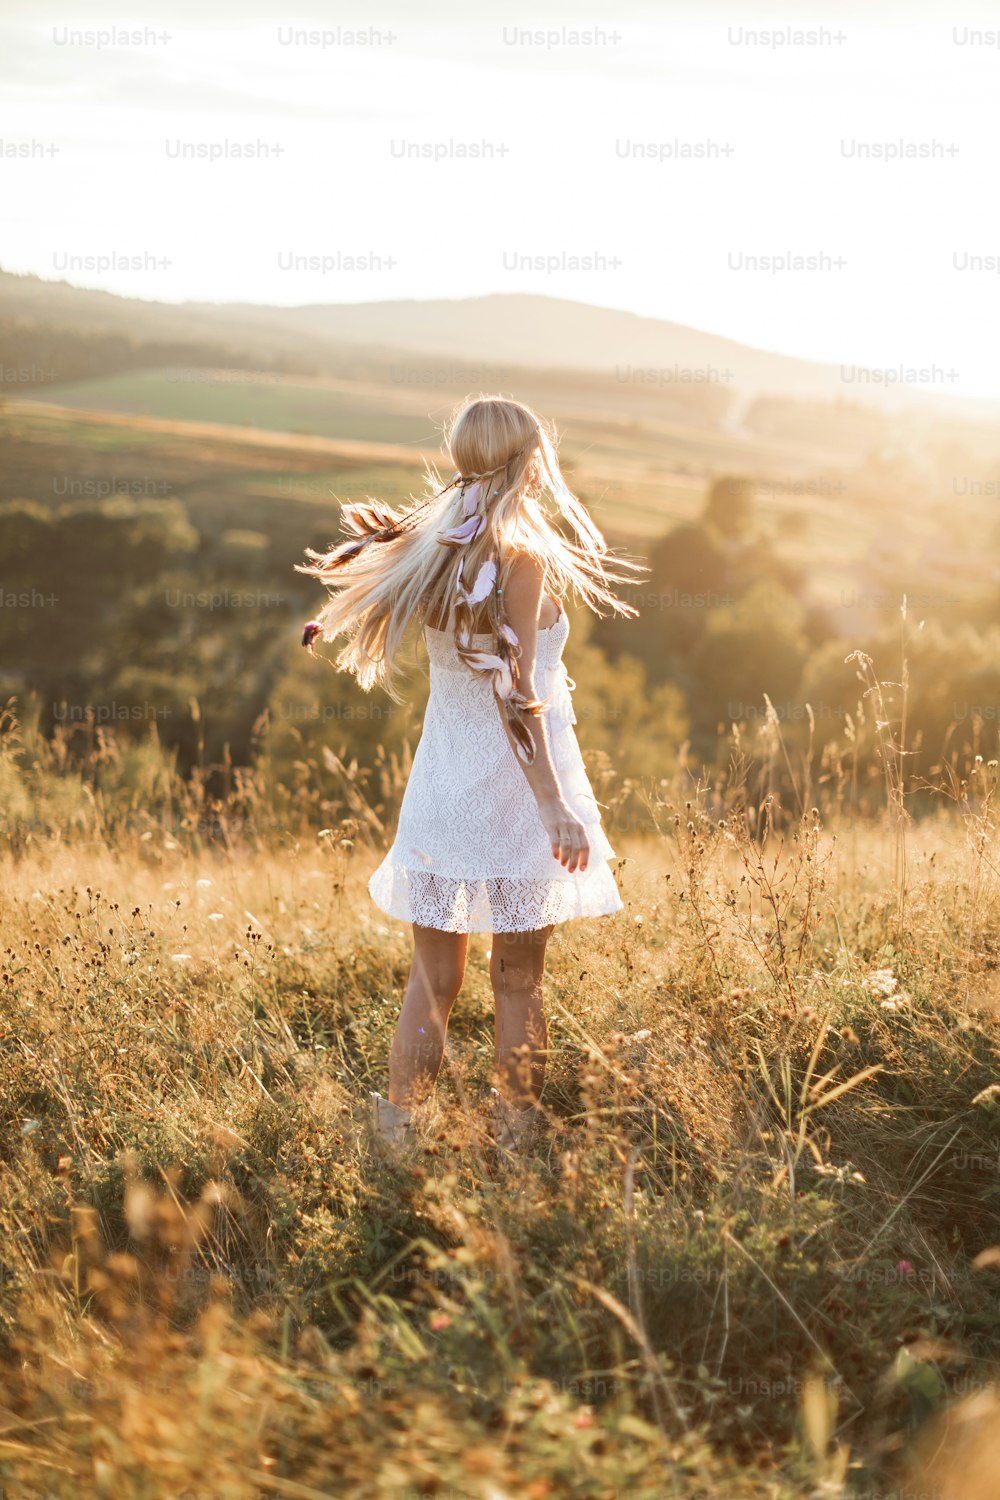 Menina hipster nova no vestido branco e penas do cabelo em pé ao ar livre, no campo de verão nas montanhas. Estilo hippie Boho.